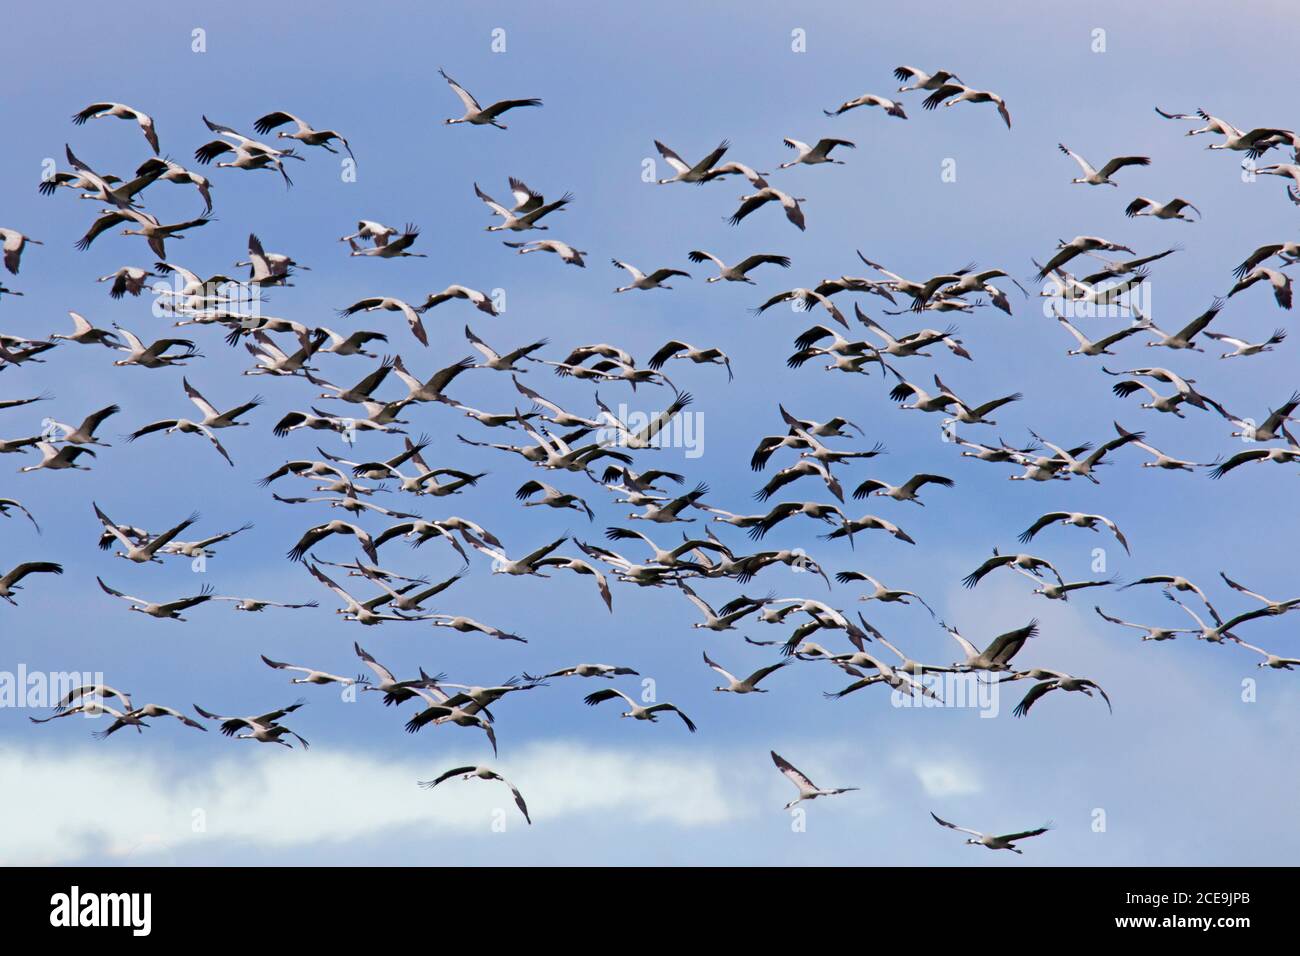 Rebaño migratorio de grúas comunes / grúa euroasiática (Grus grus) volando contra el cielo azul durante la migración en otoño Foto de stock